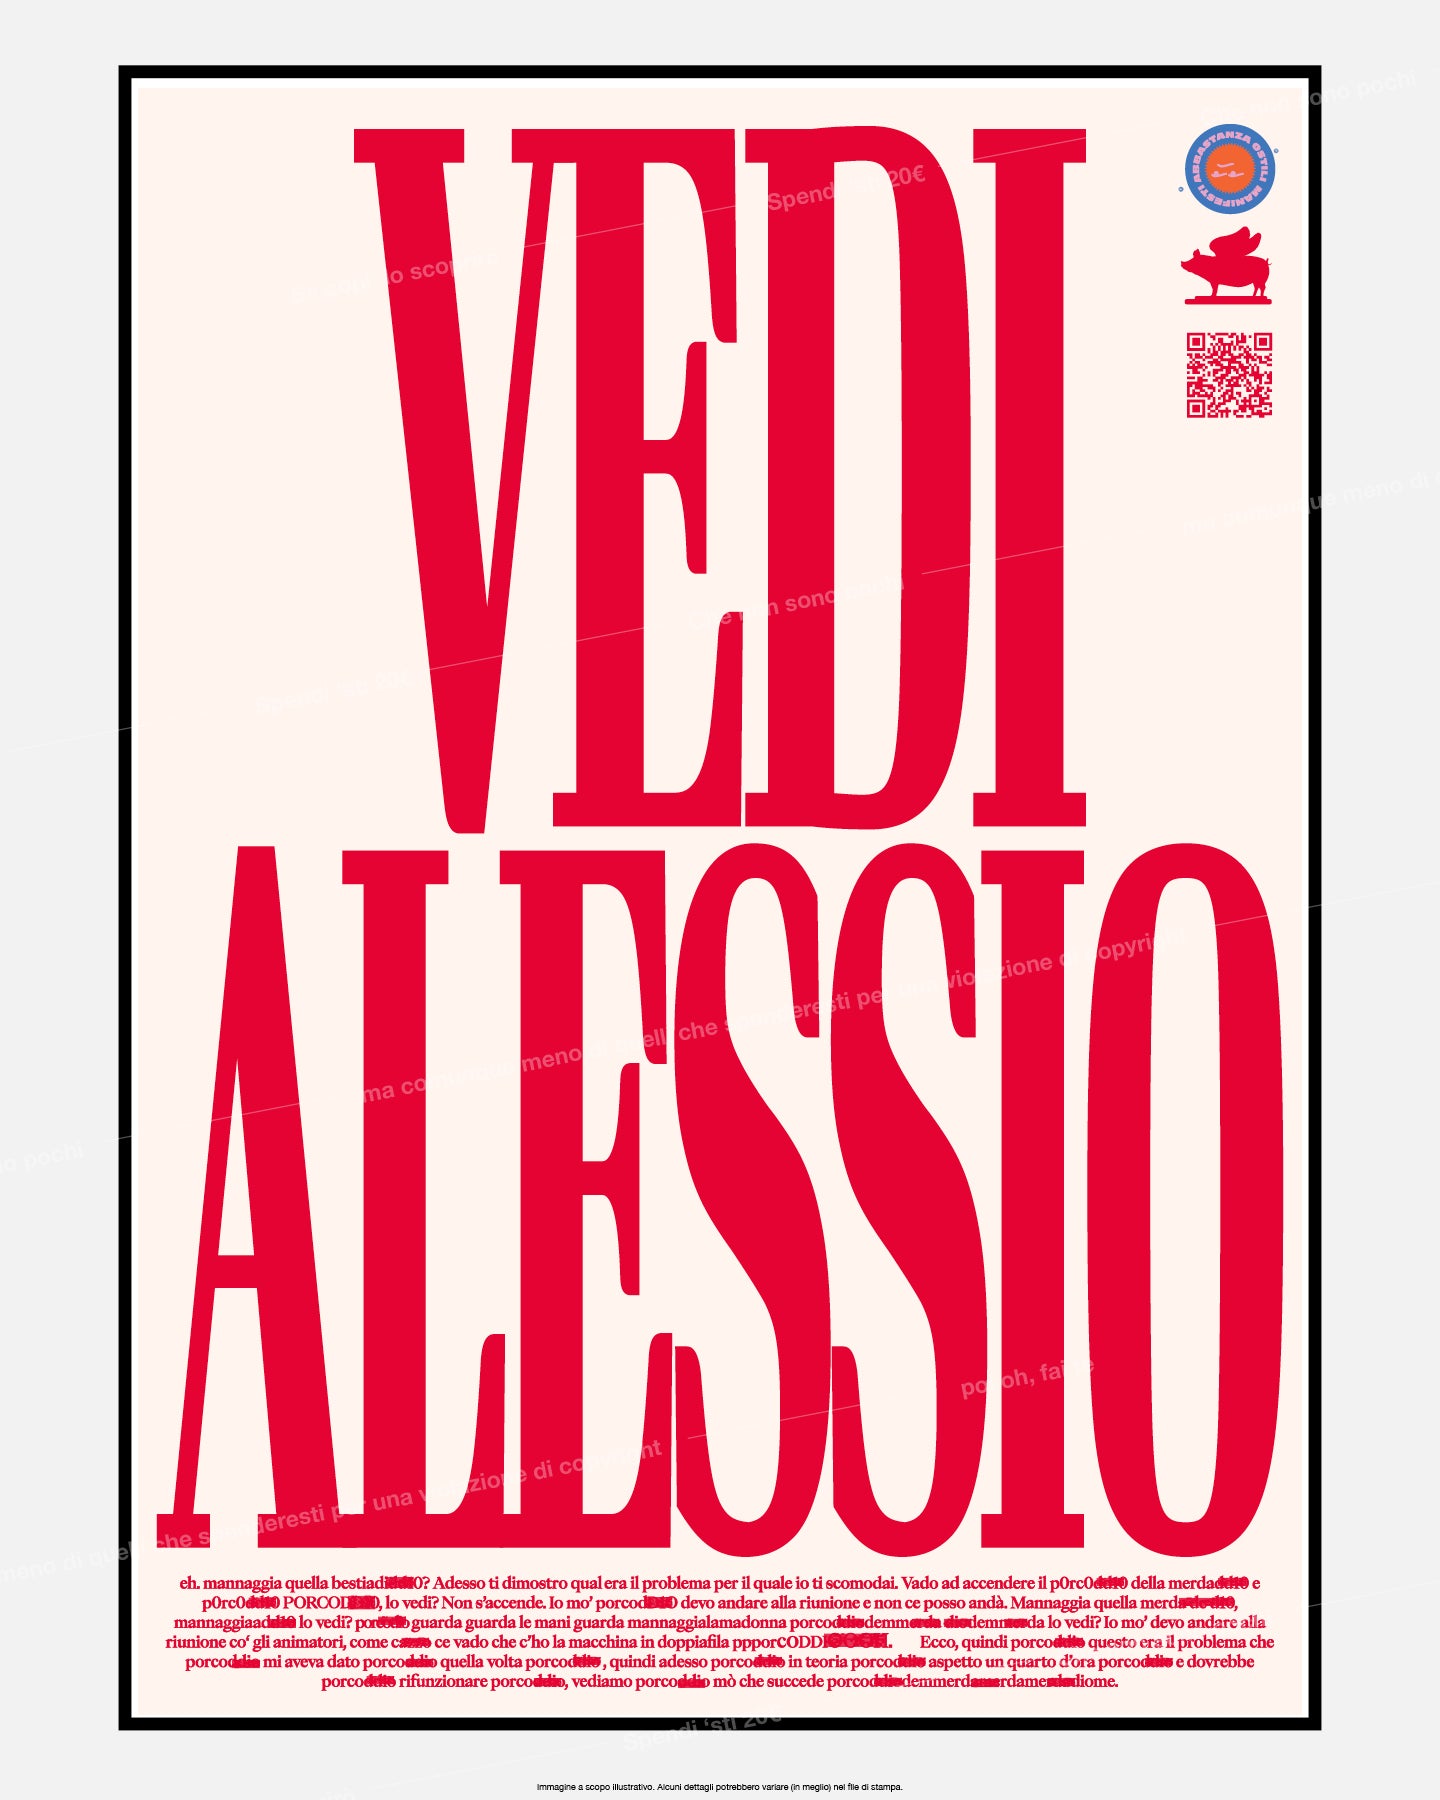 Vedi Alessio [Ed. Festival del Videocane 23]